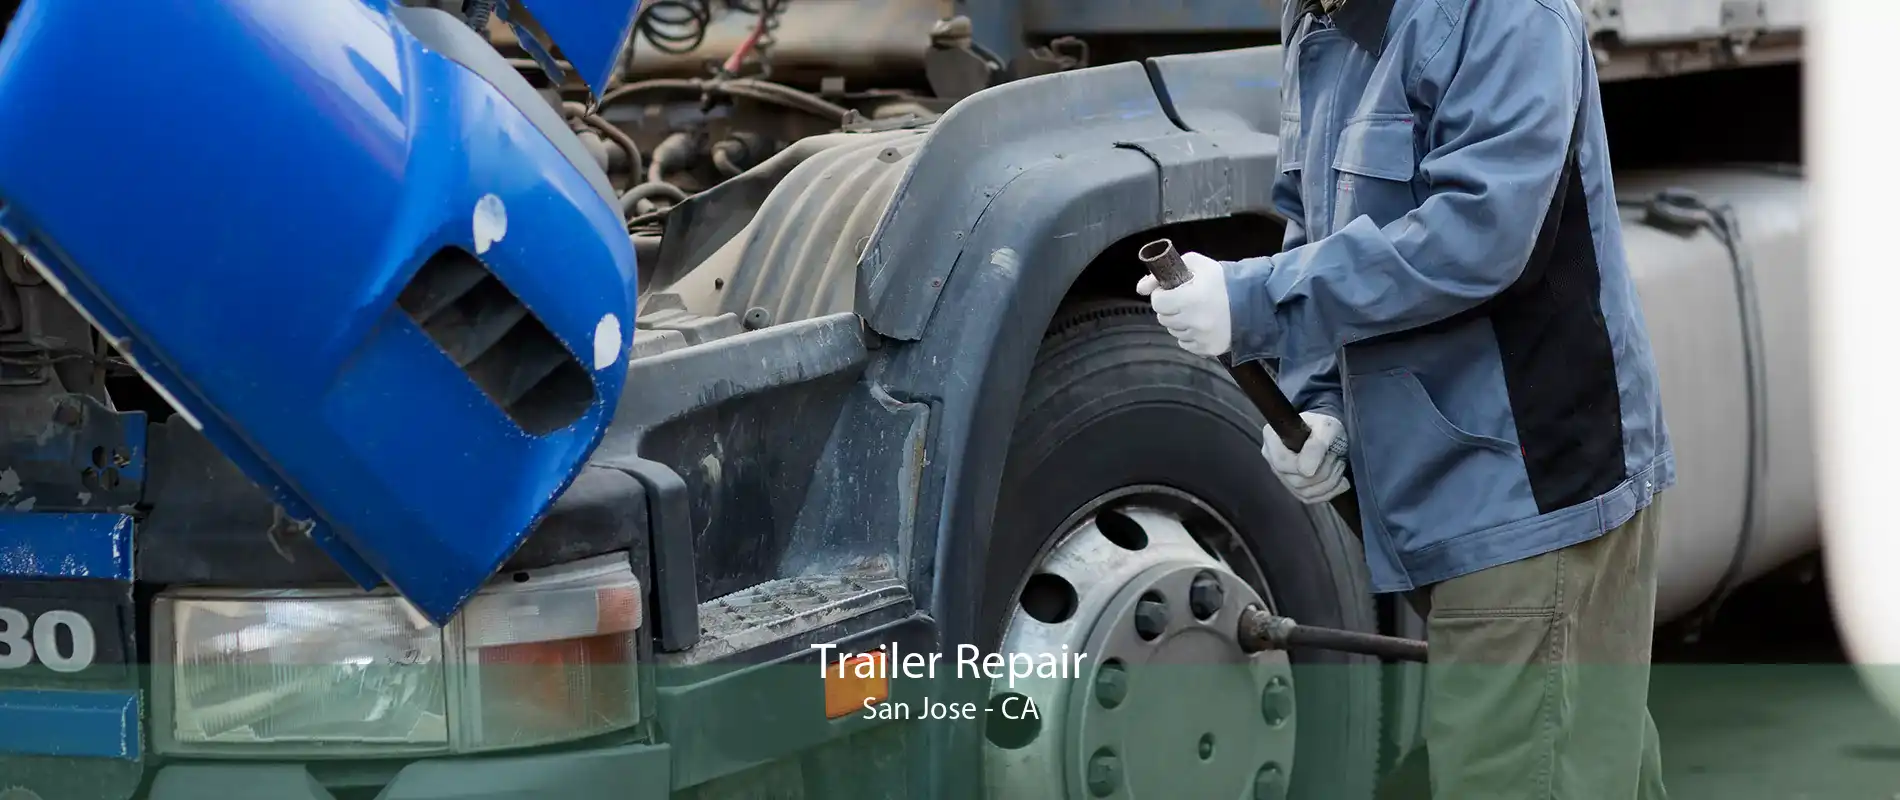 Trailer Repair San Jose - CA